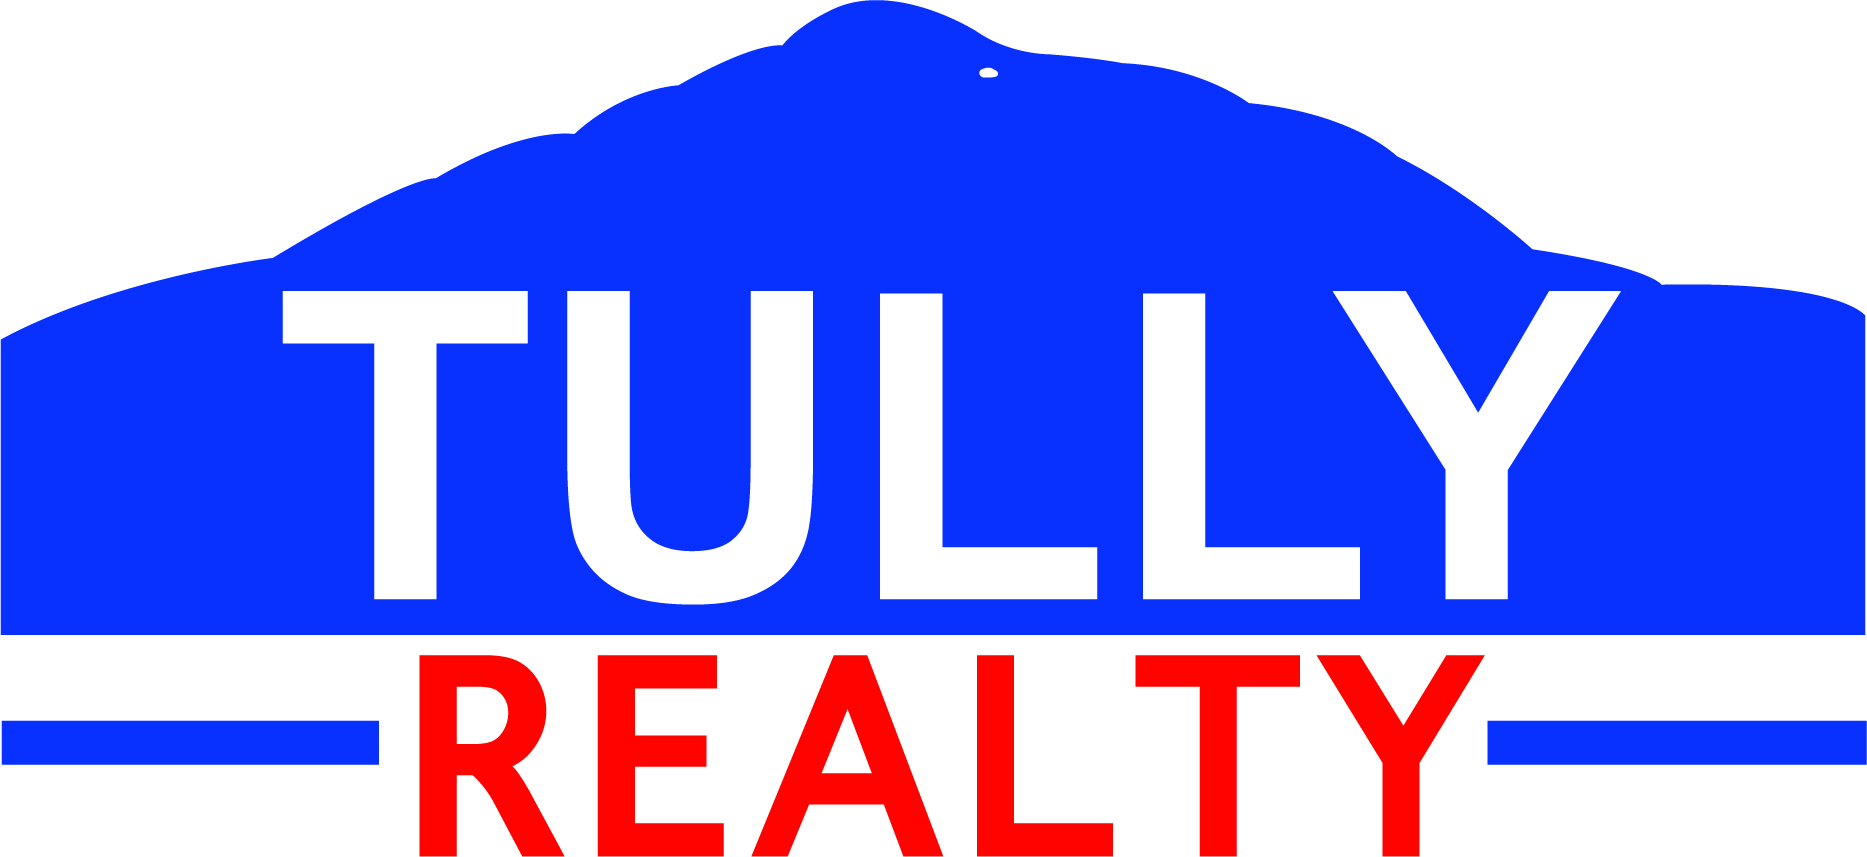 Tully Realty - logo